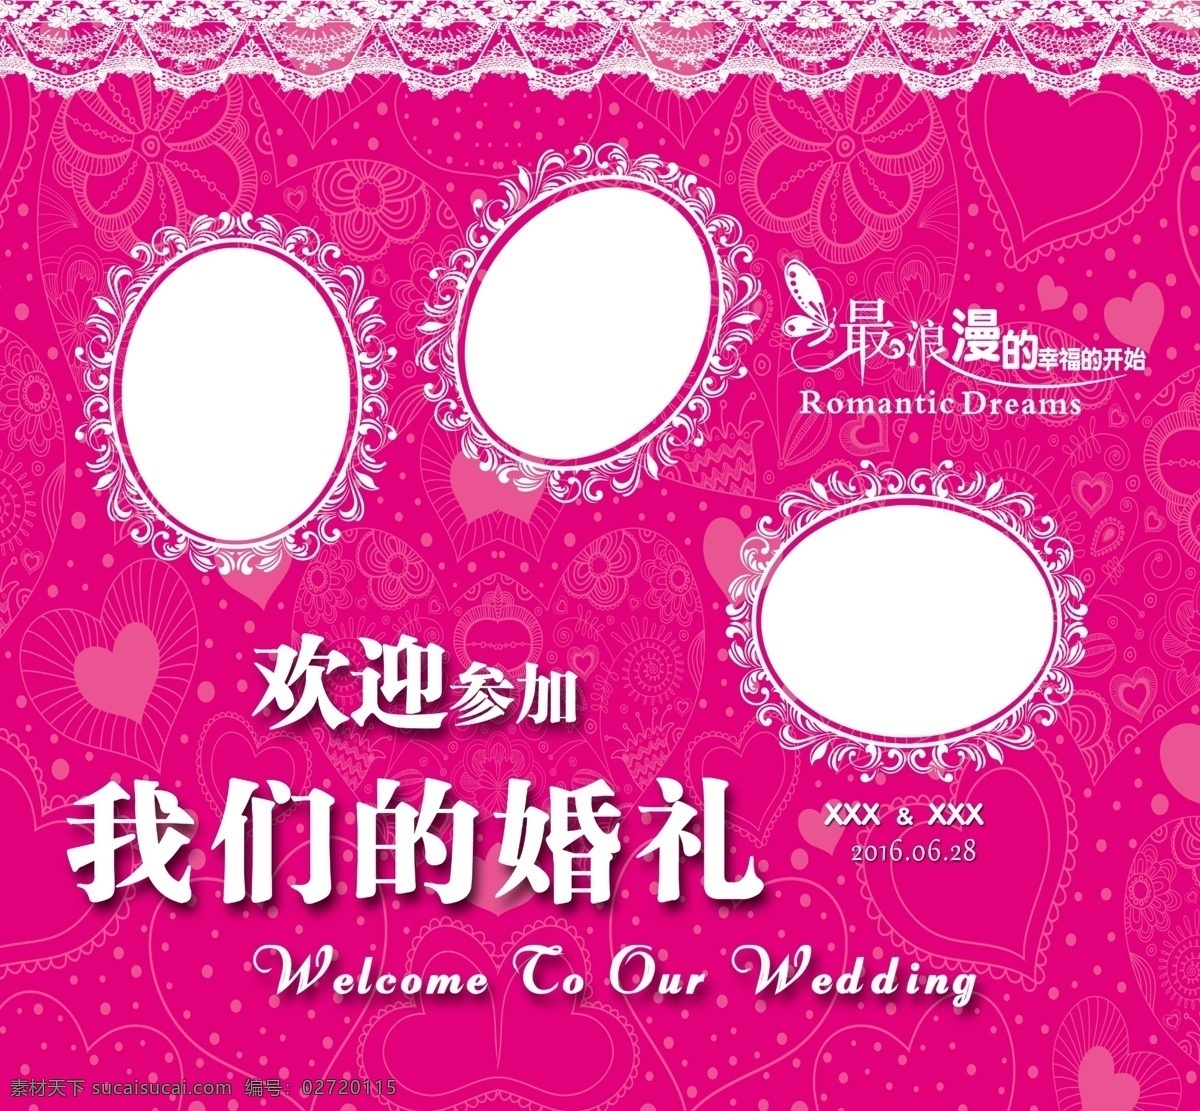 婚礼签到台 粉色背景 边框 欢迎参加 我们的婚礼 婚礼 背景 签到台 粉色 love 展板 展板模板